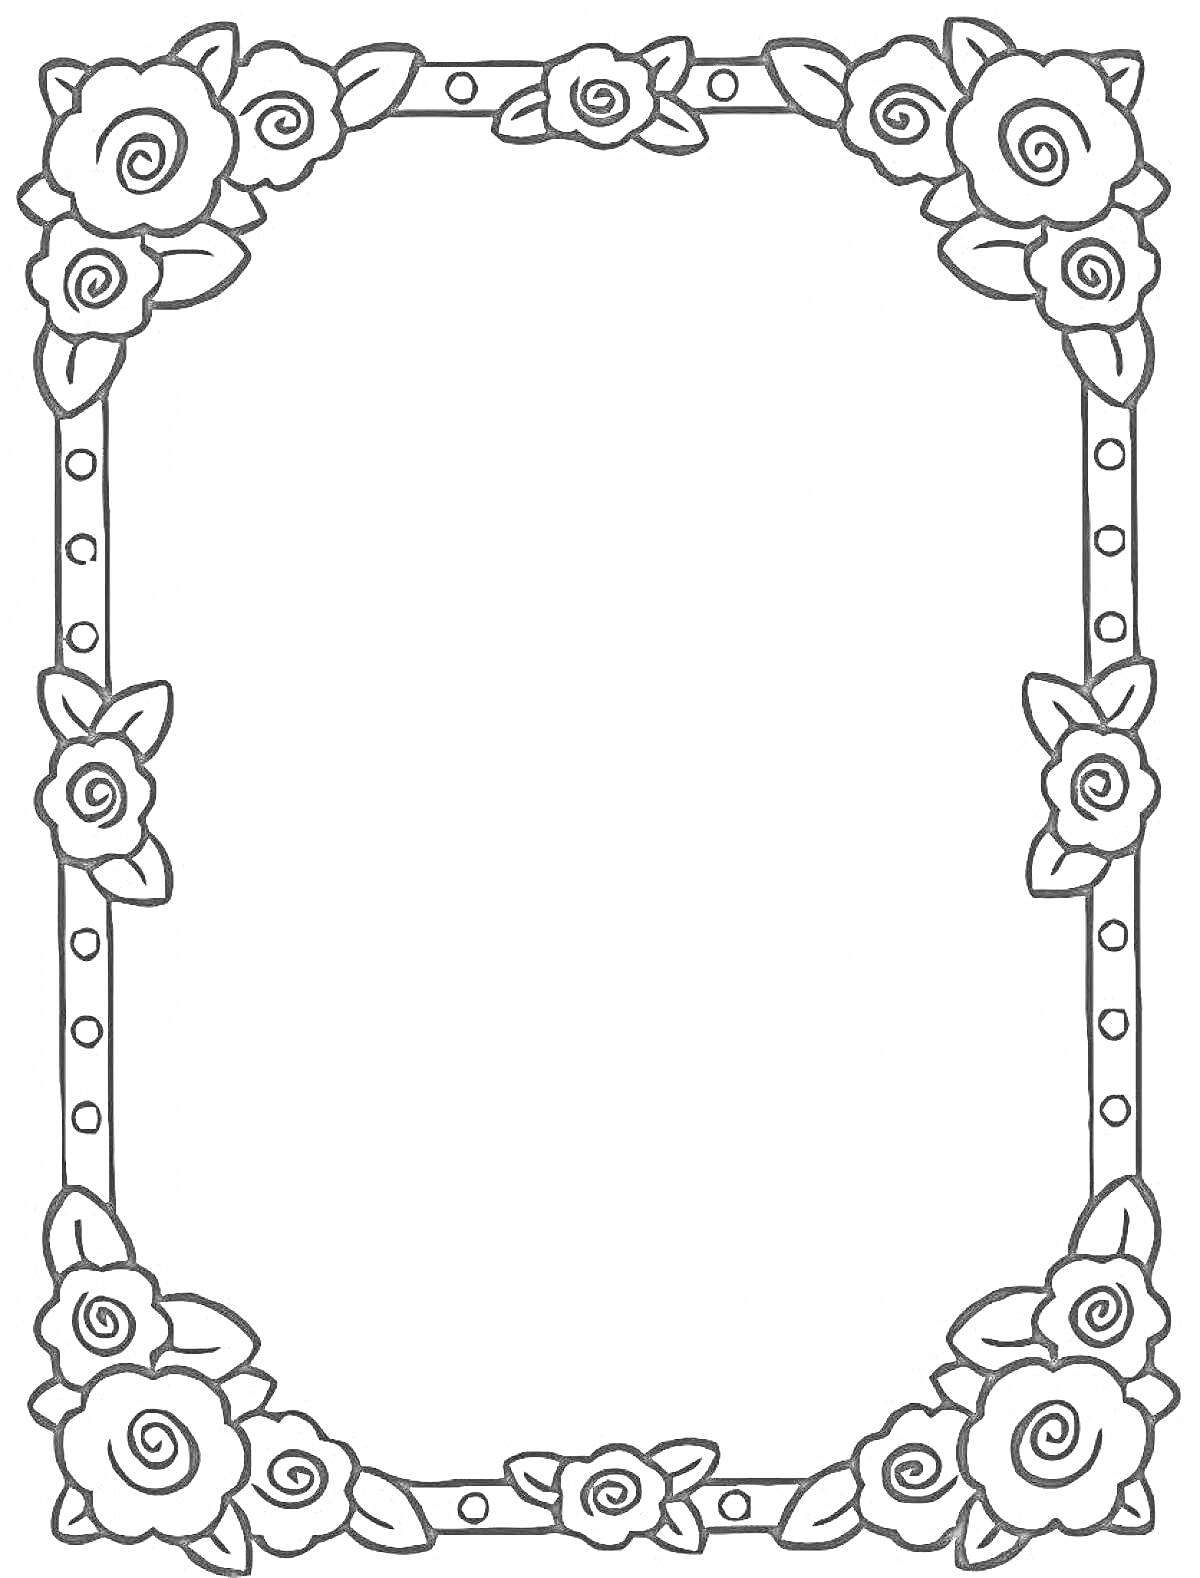 Раскраска Рамка с розами и листьями по углам